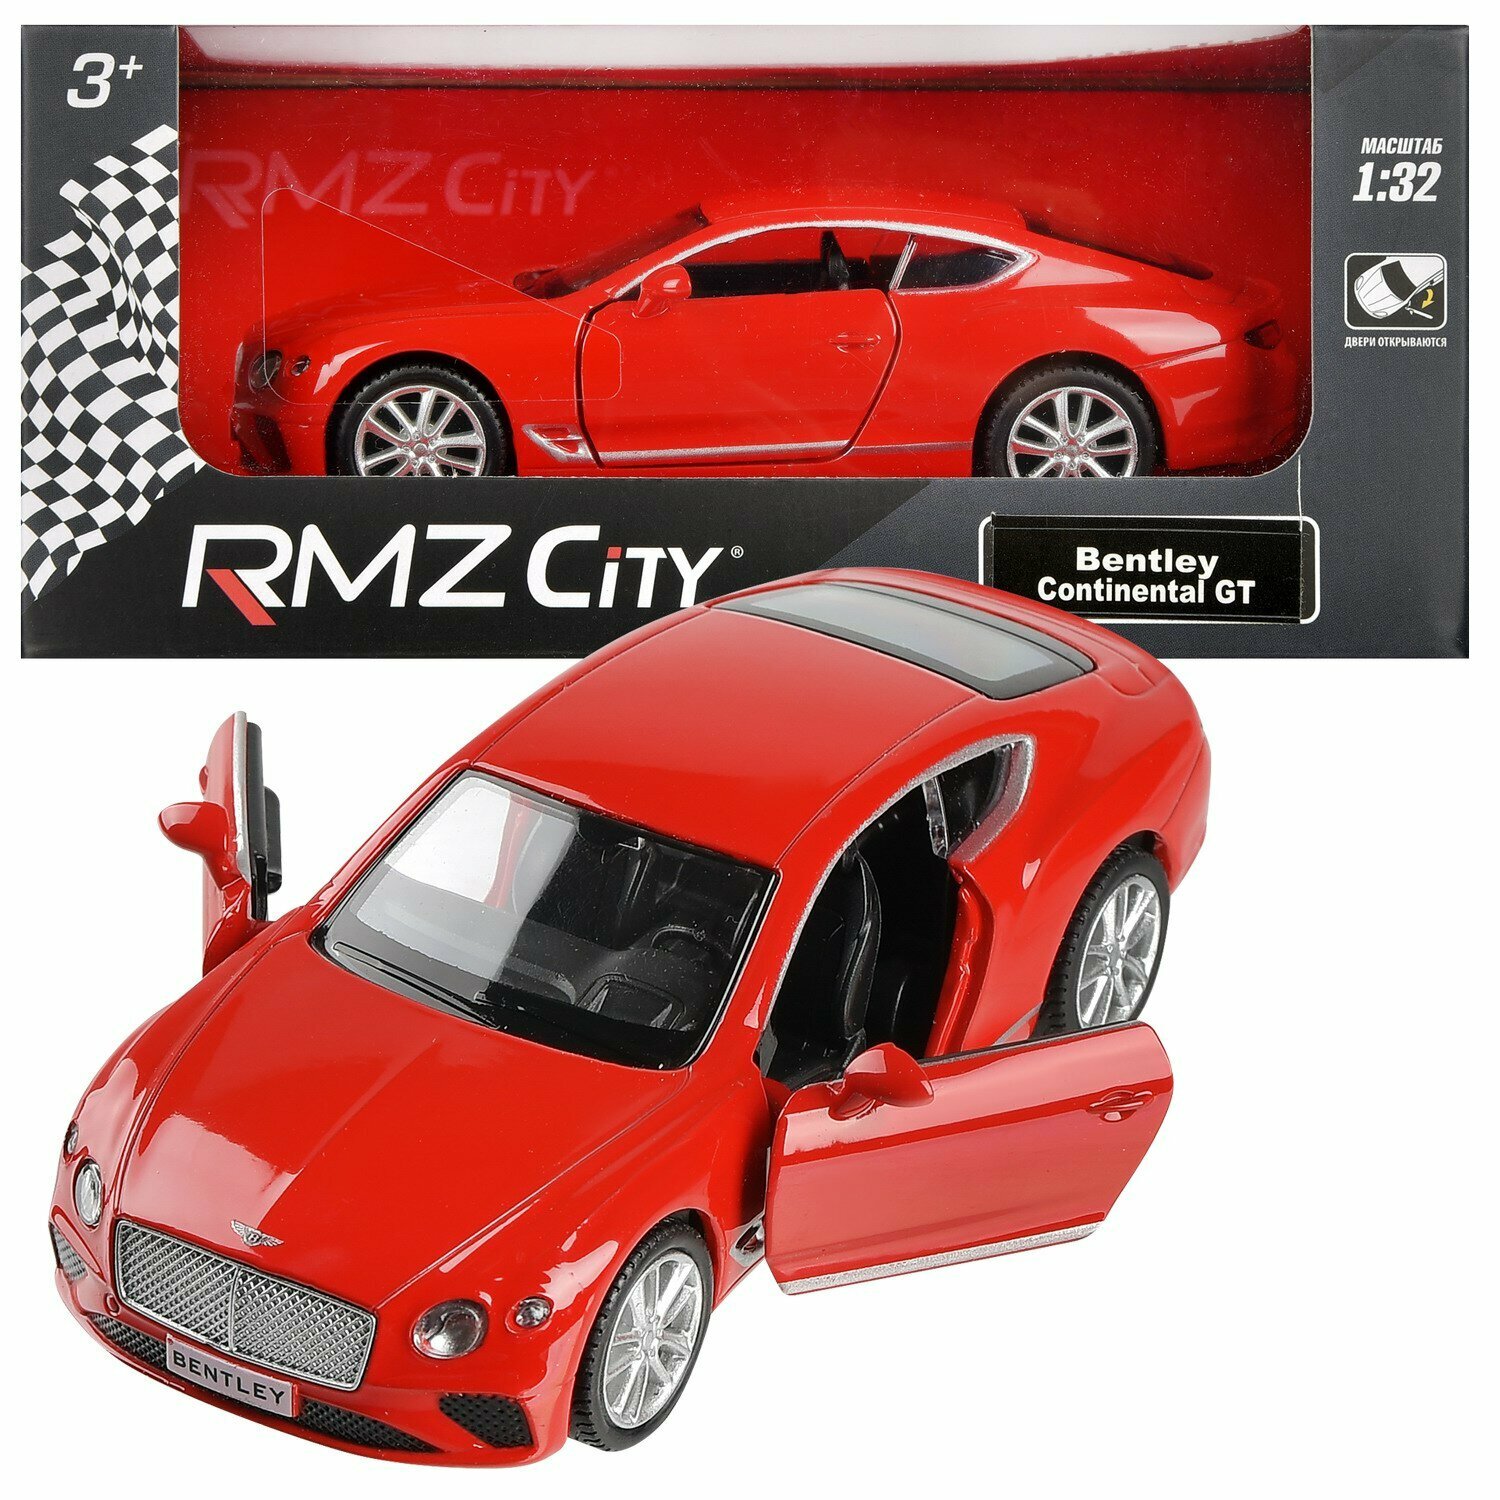 Машинка металлическая Uni-Fortune RMZ City серия 1:32 The Bentley Continental GT 2018 , цвет красный, двери открываются